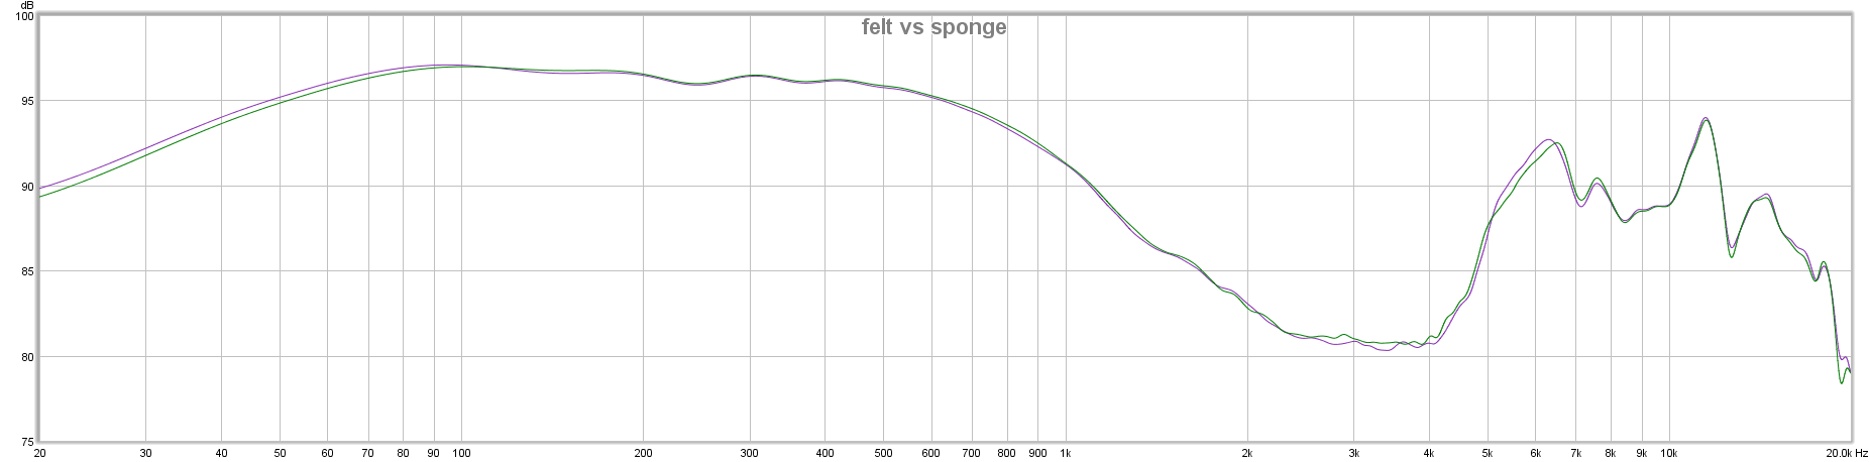 felt vs sponge.jpg